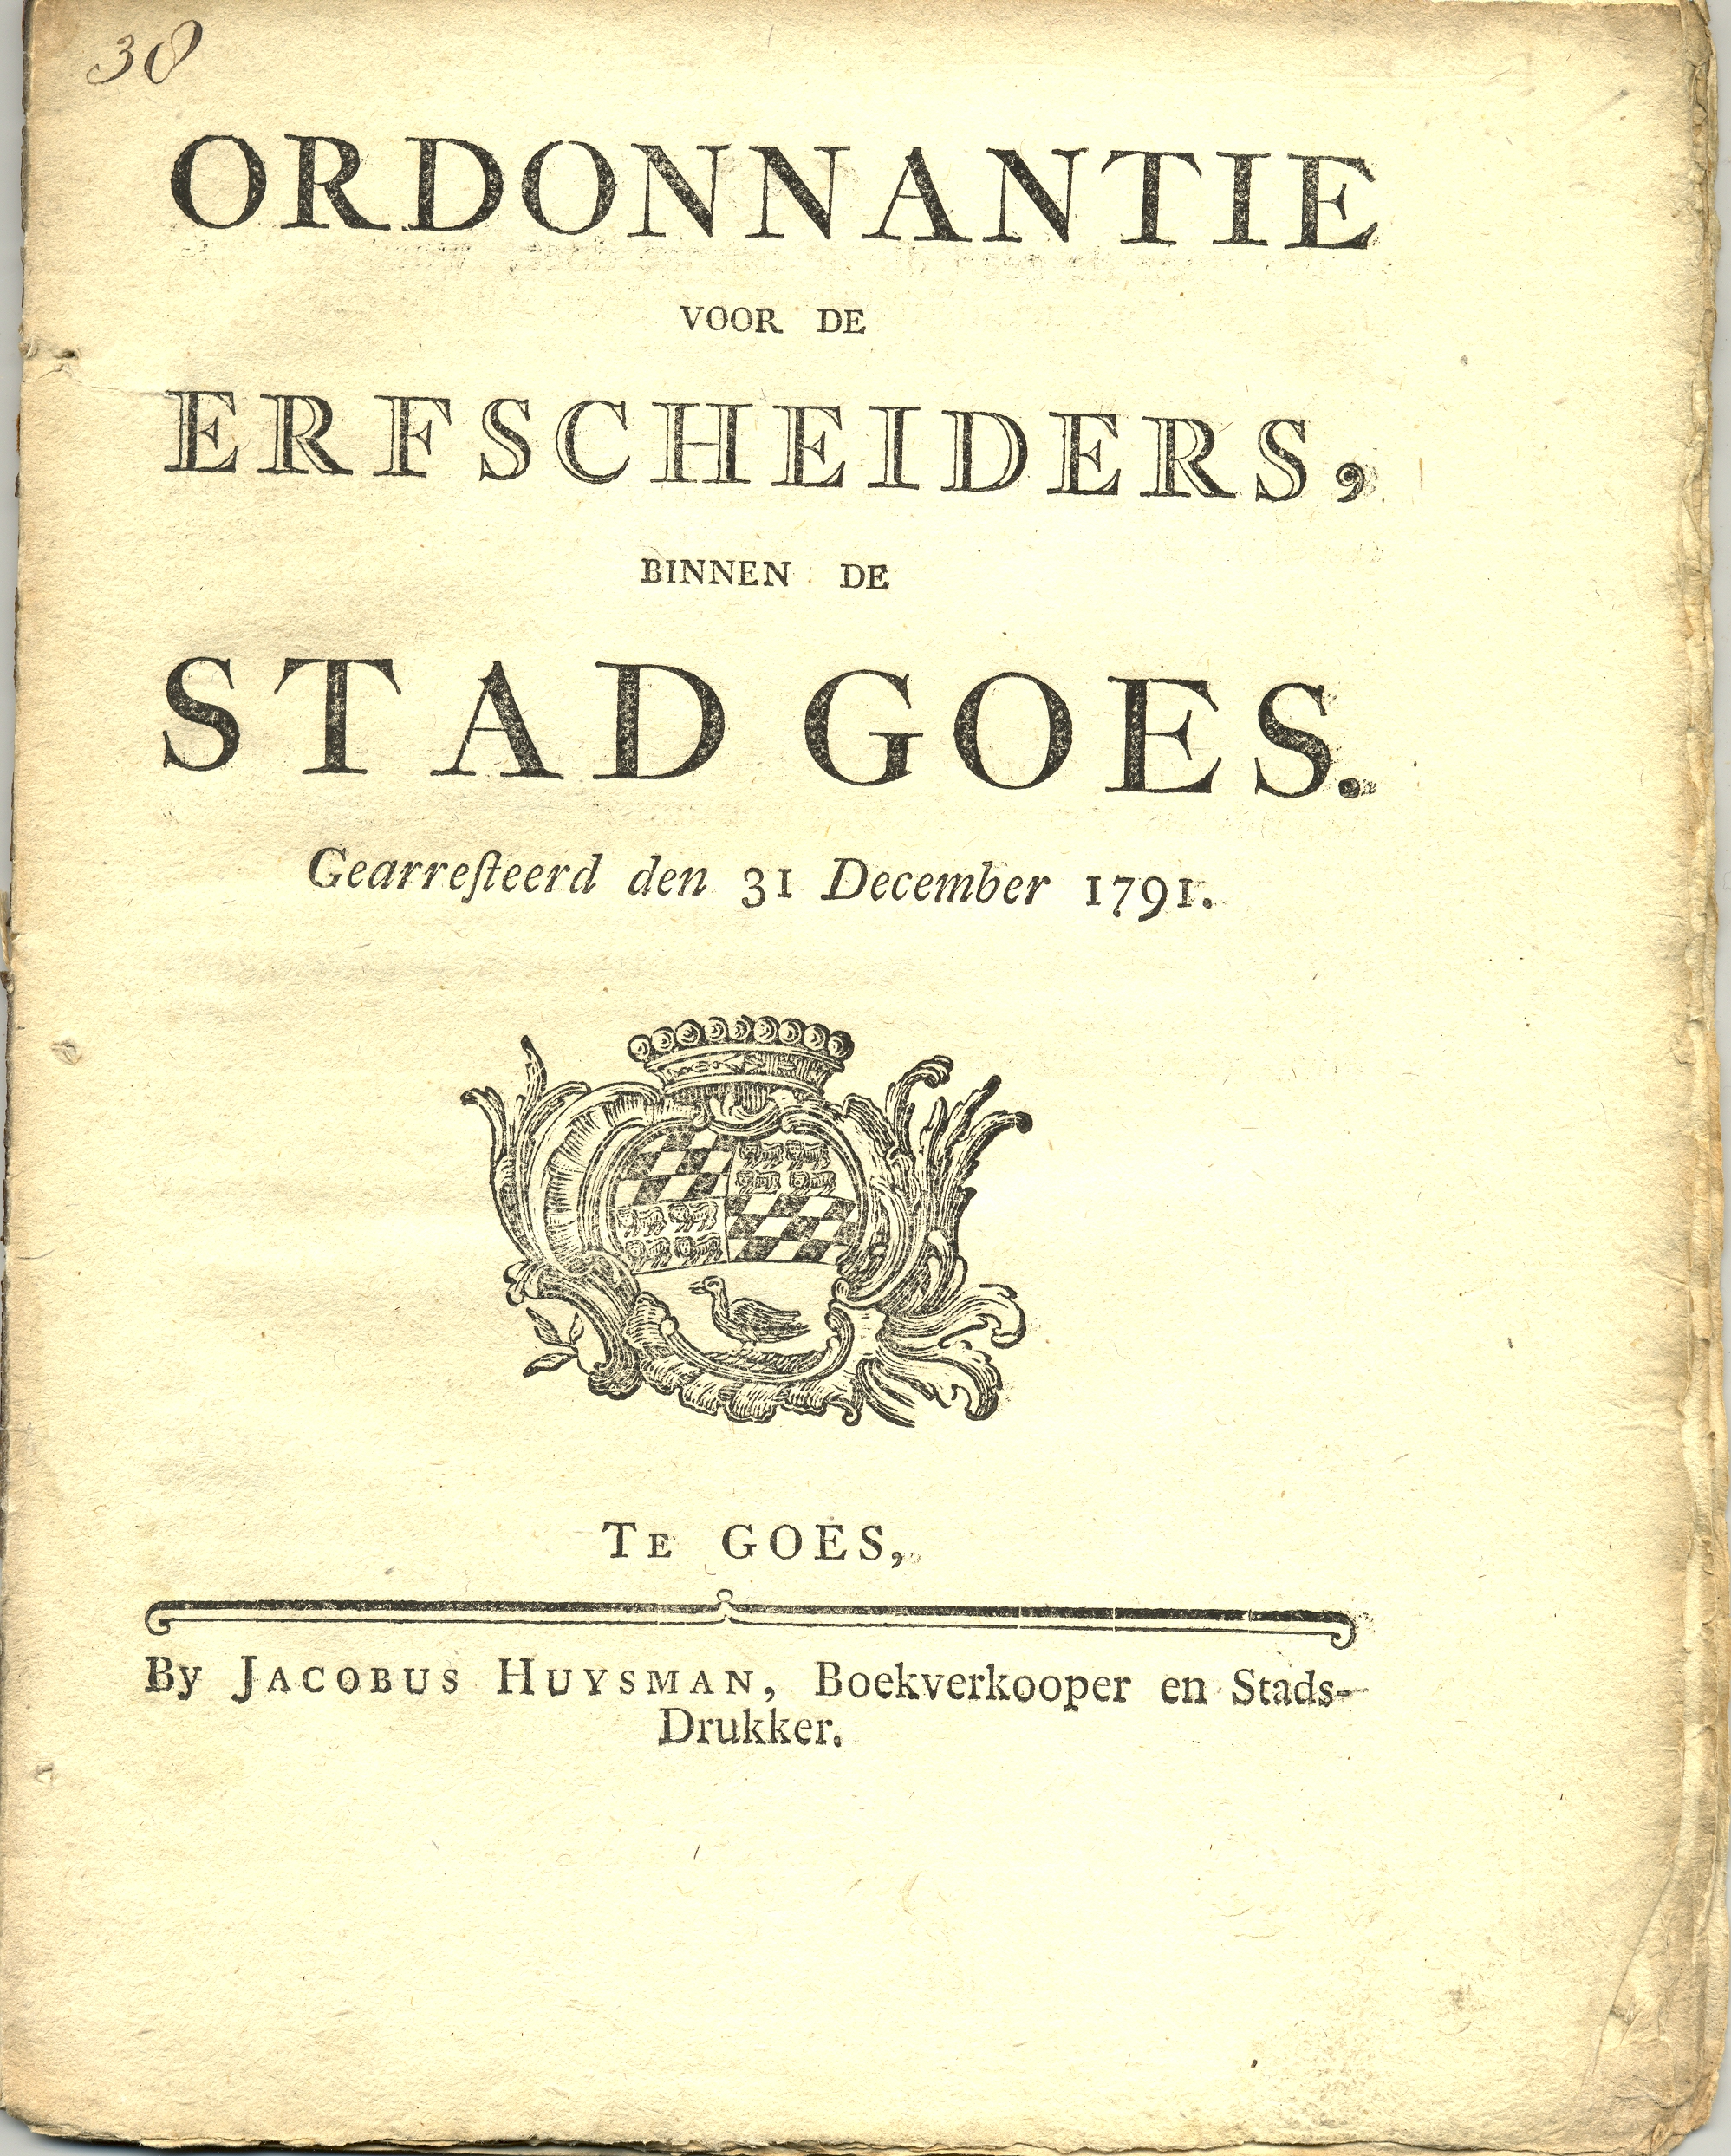 Ordonnantie voor de erfscheiders, 1791.